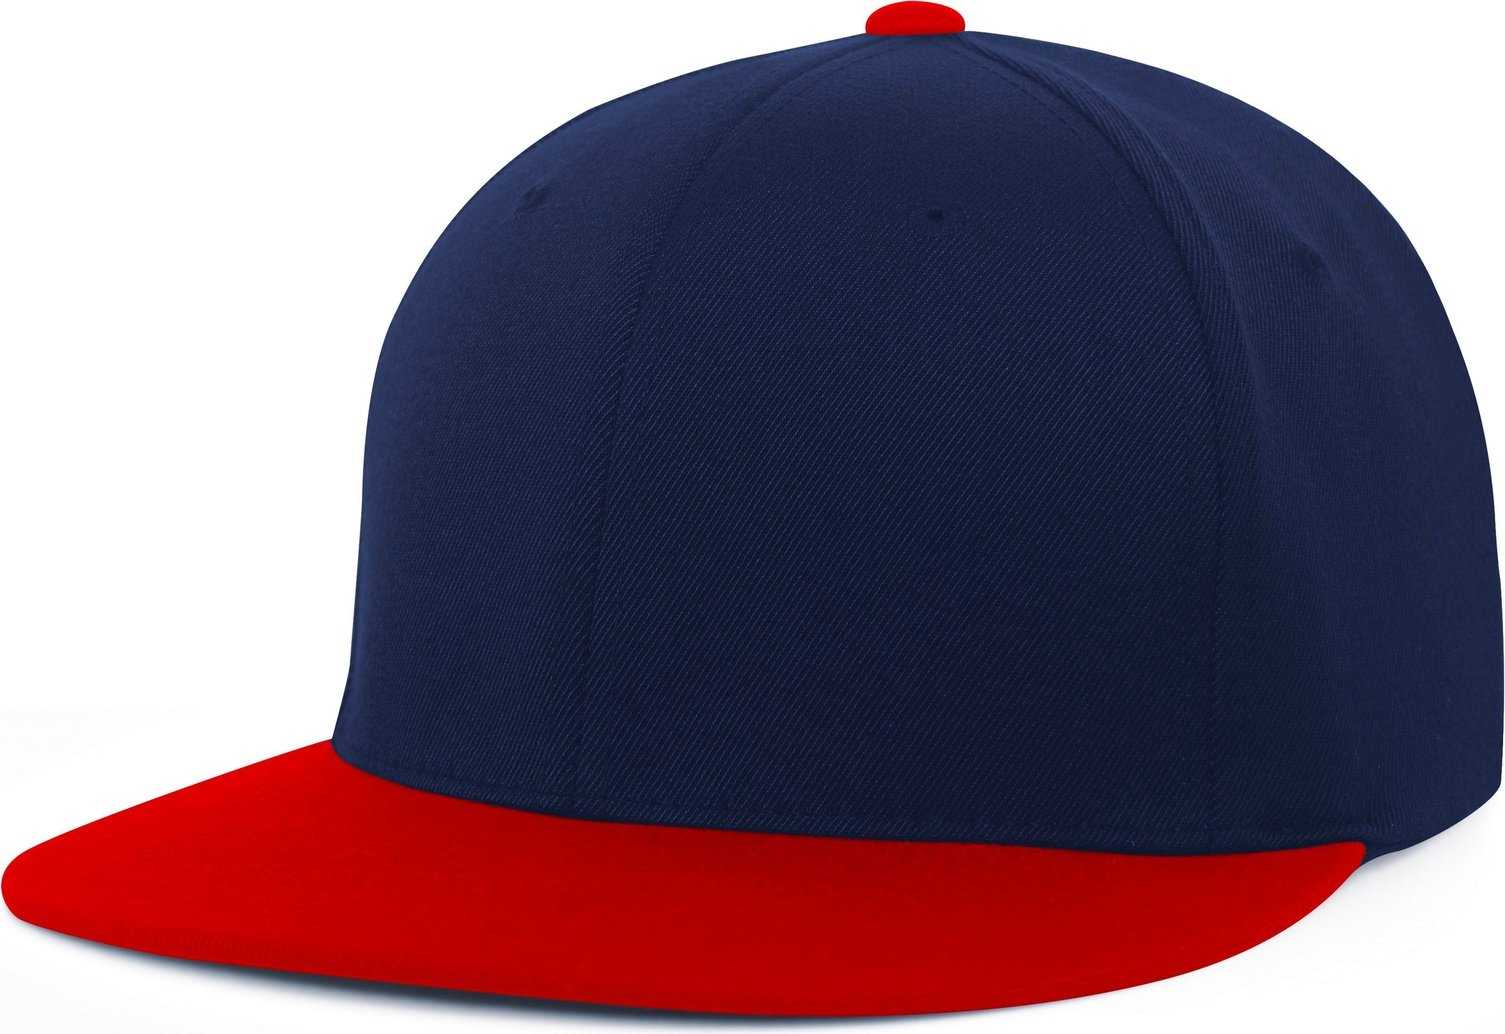 Pacific Headwear Es811 Premium A/C?›?ý Performance Flexfit Cap - Navy Red - HIT a Double